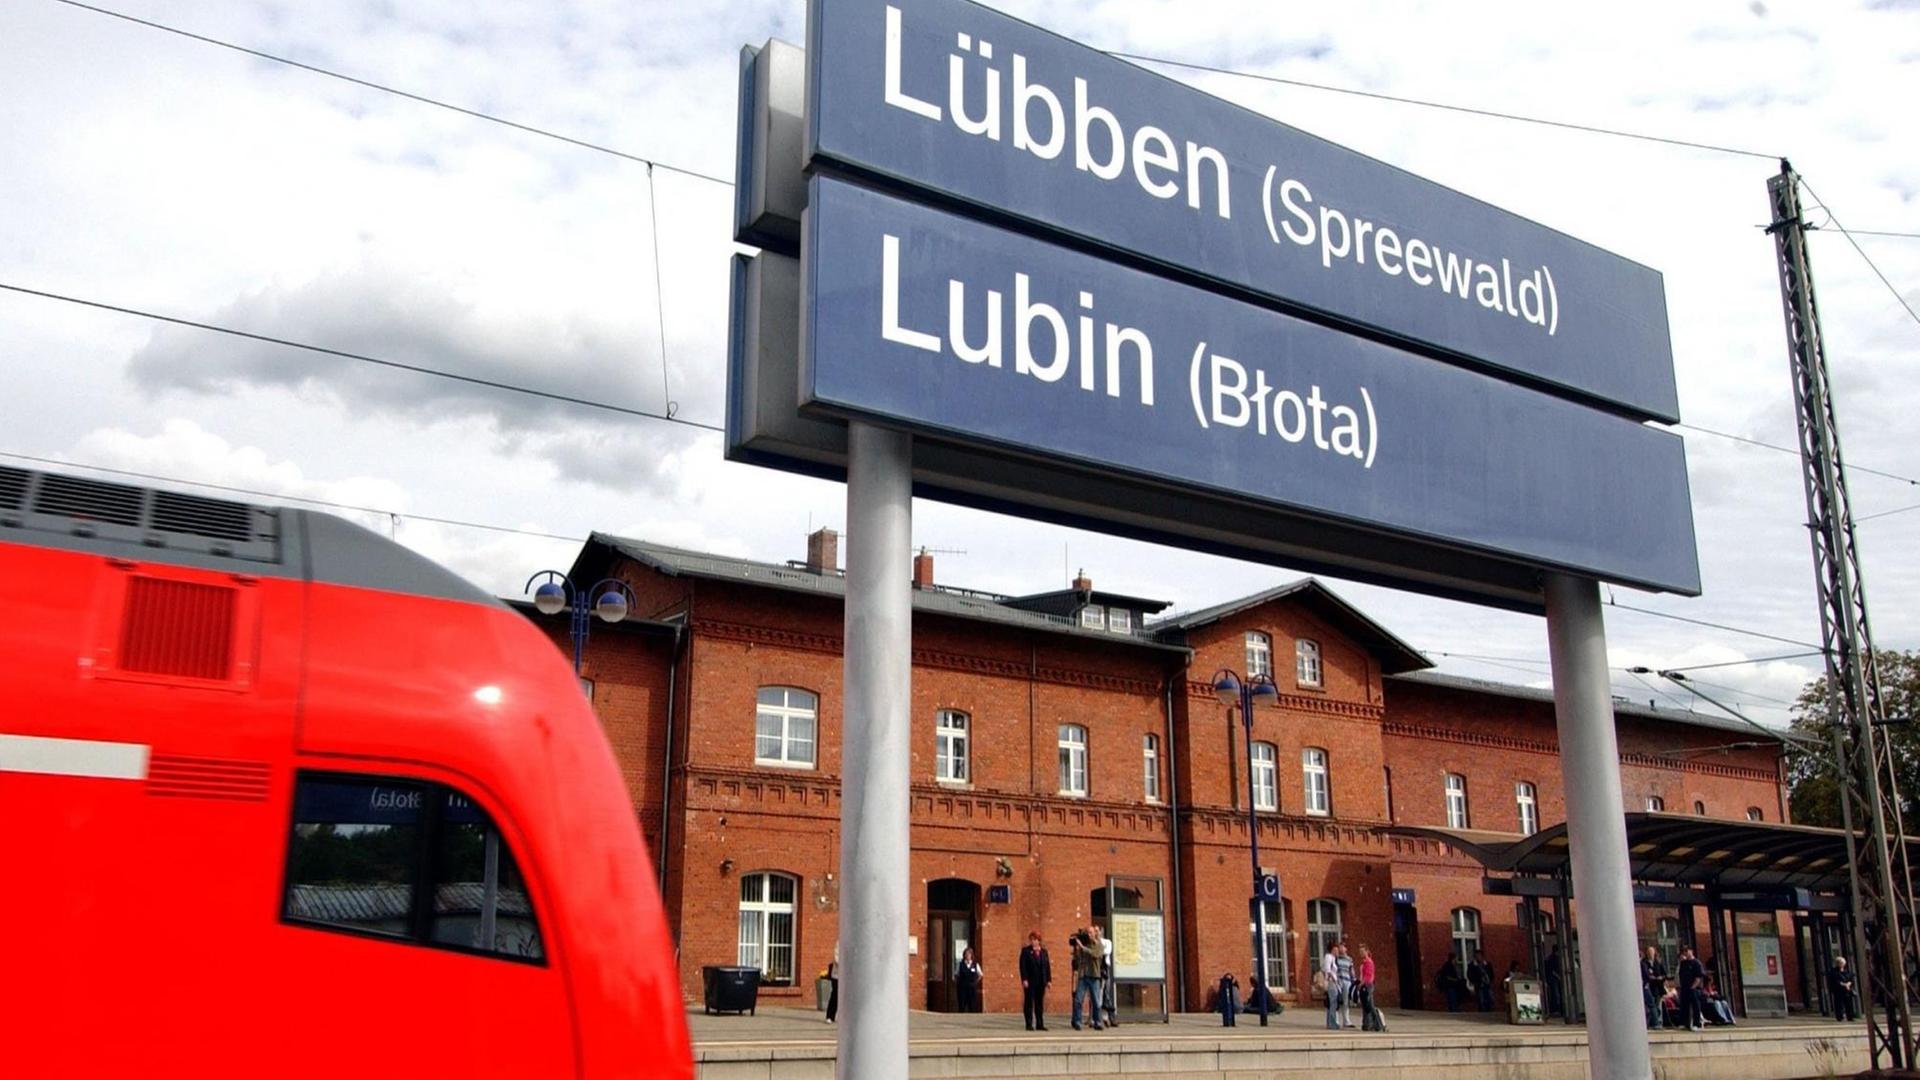 Ein Regionalzug fährt in den Bahnhof der brandenburgischen Stadt Lübben ein. Der Ortsname auf den Bahnhofsschildern ist auch in sorbischer Sprache dargestellt.